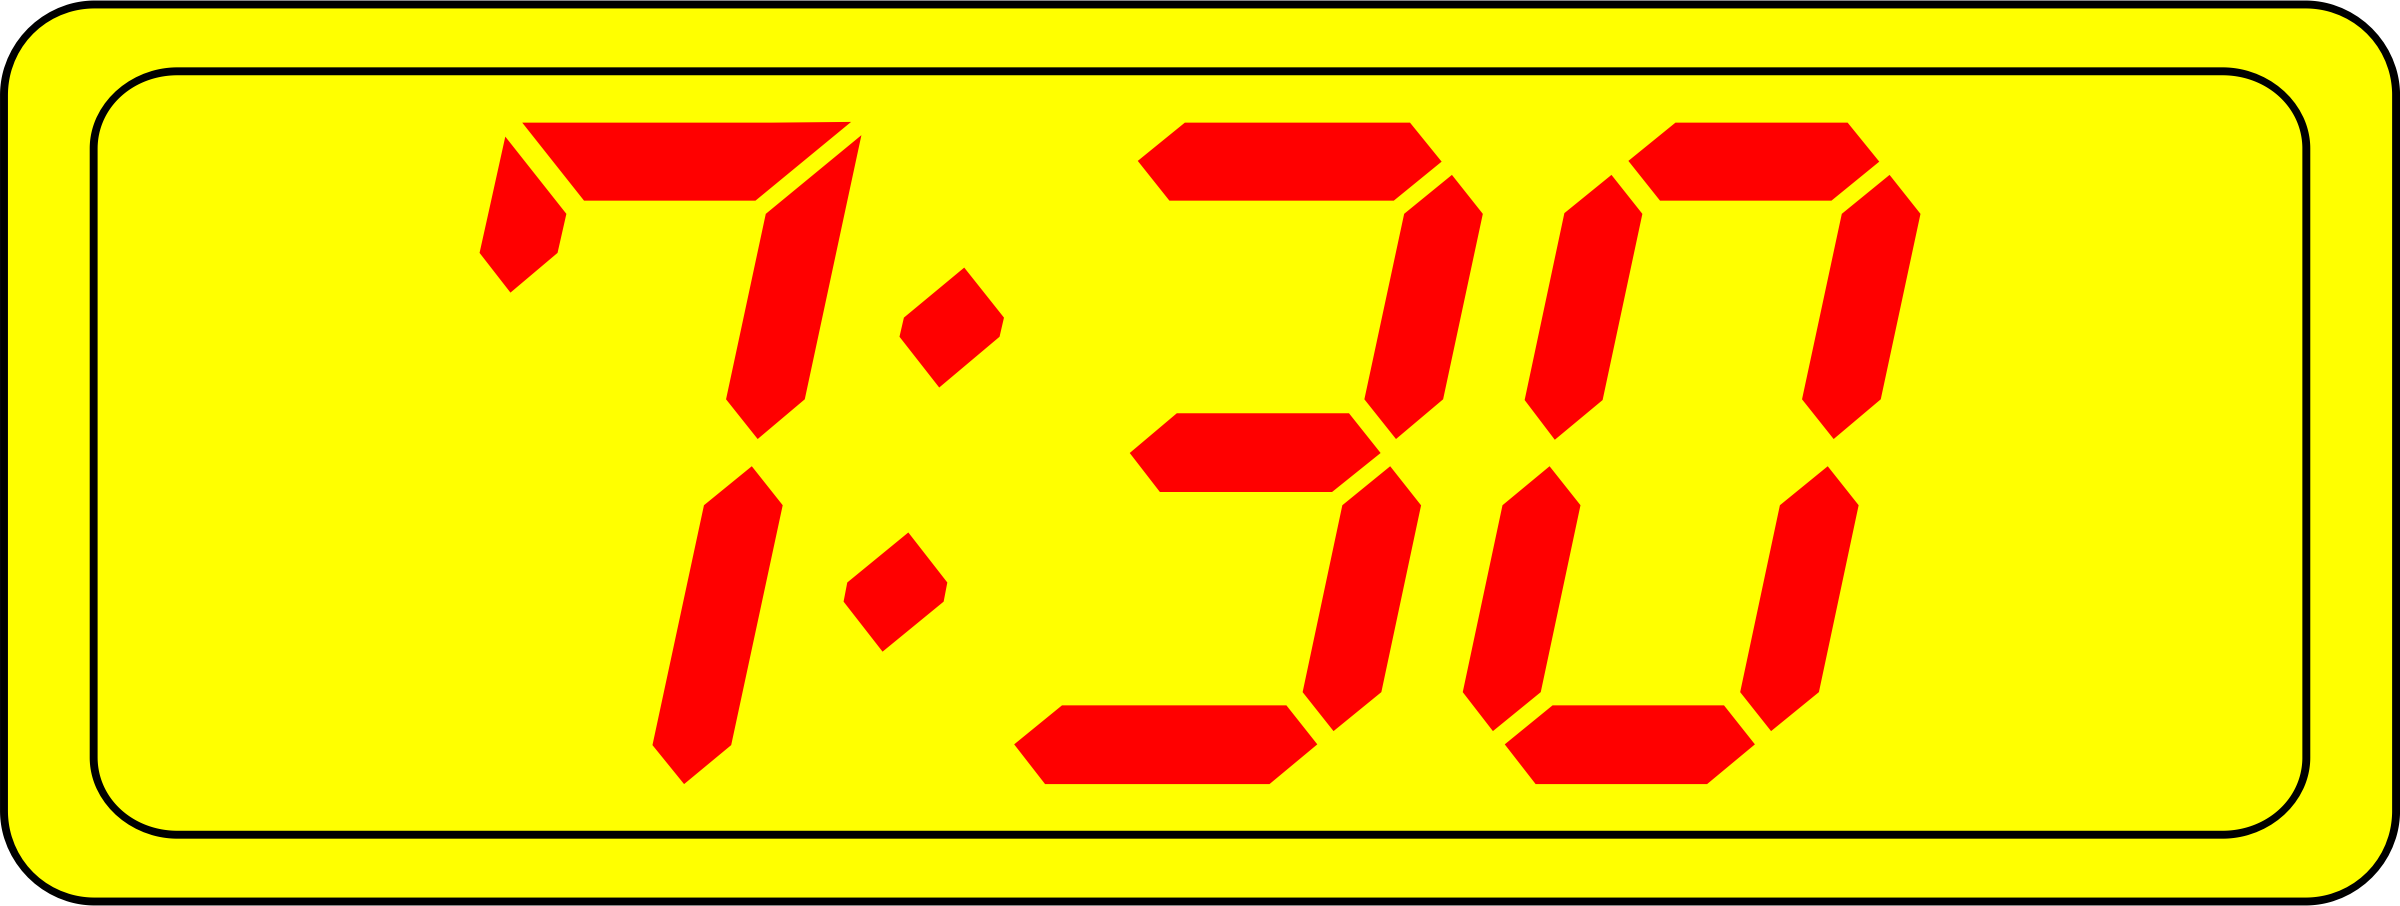 Big Image - Digital Clock Clipart (2400x906)